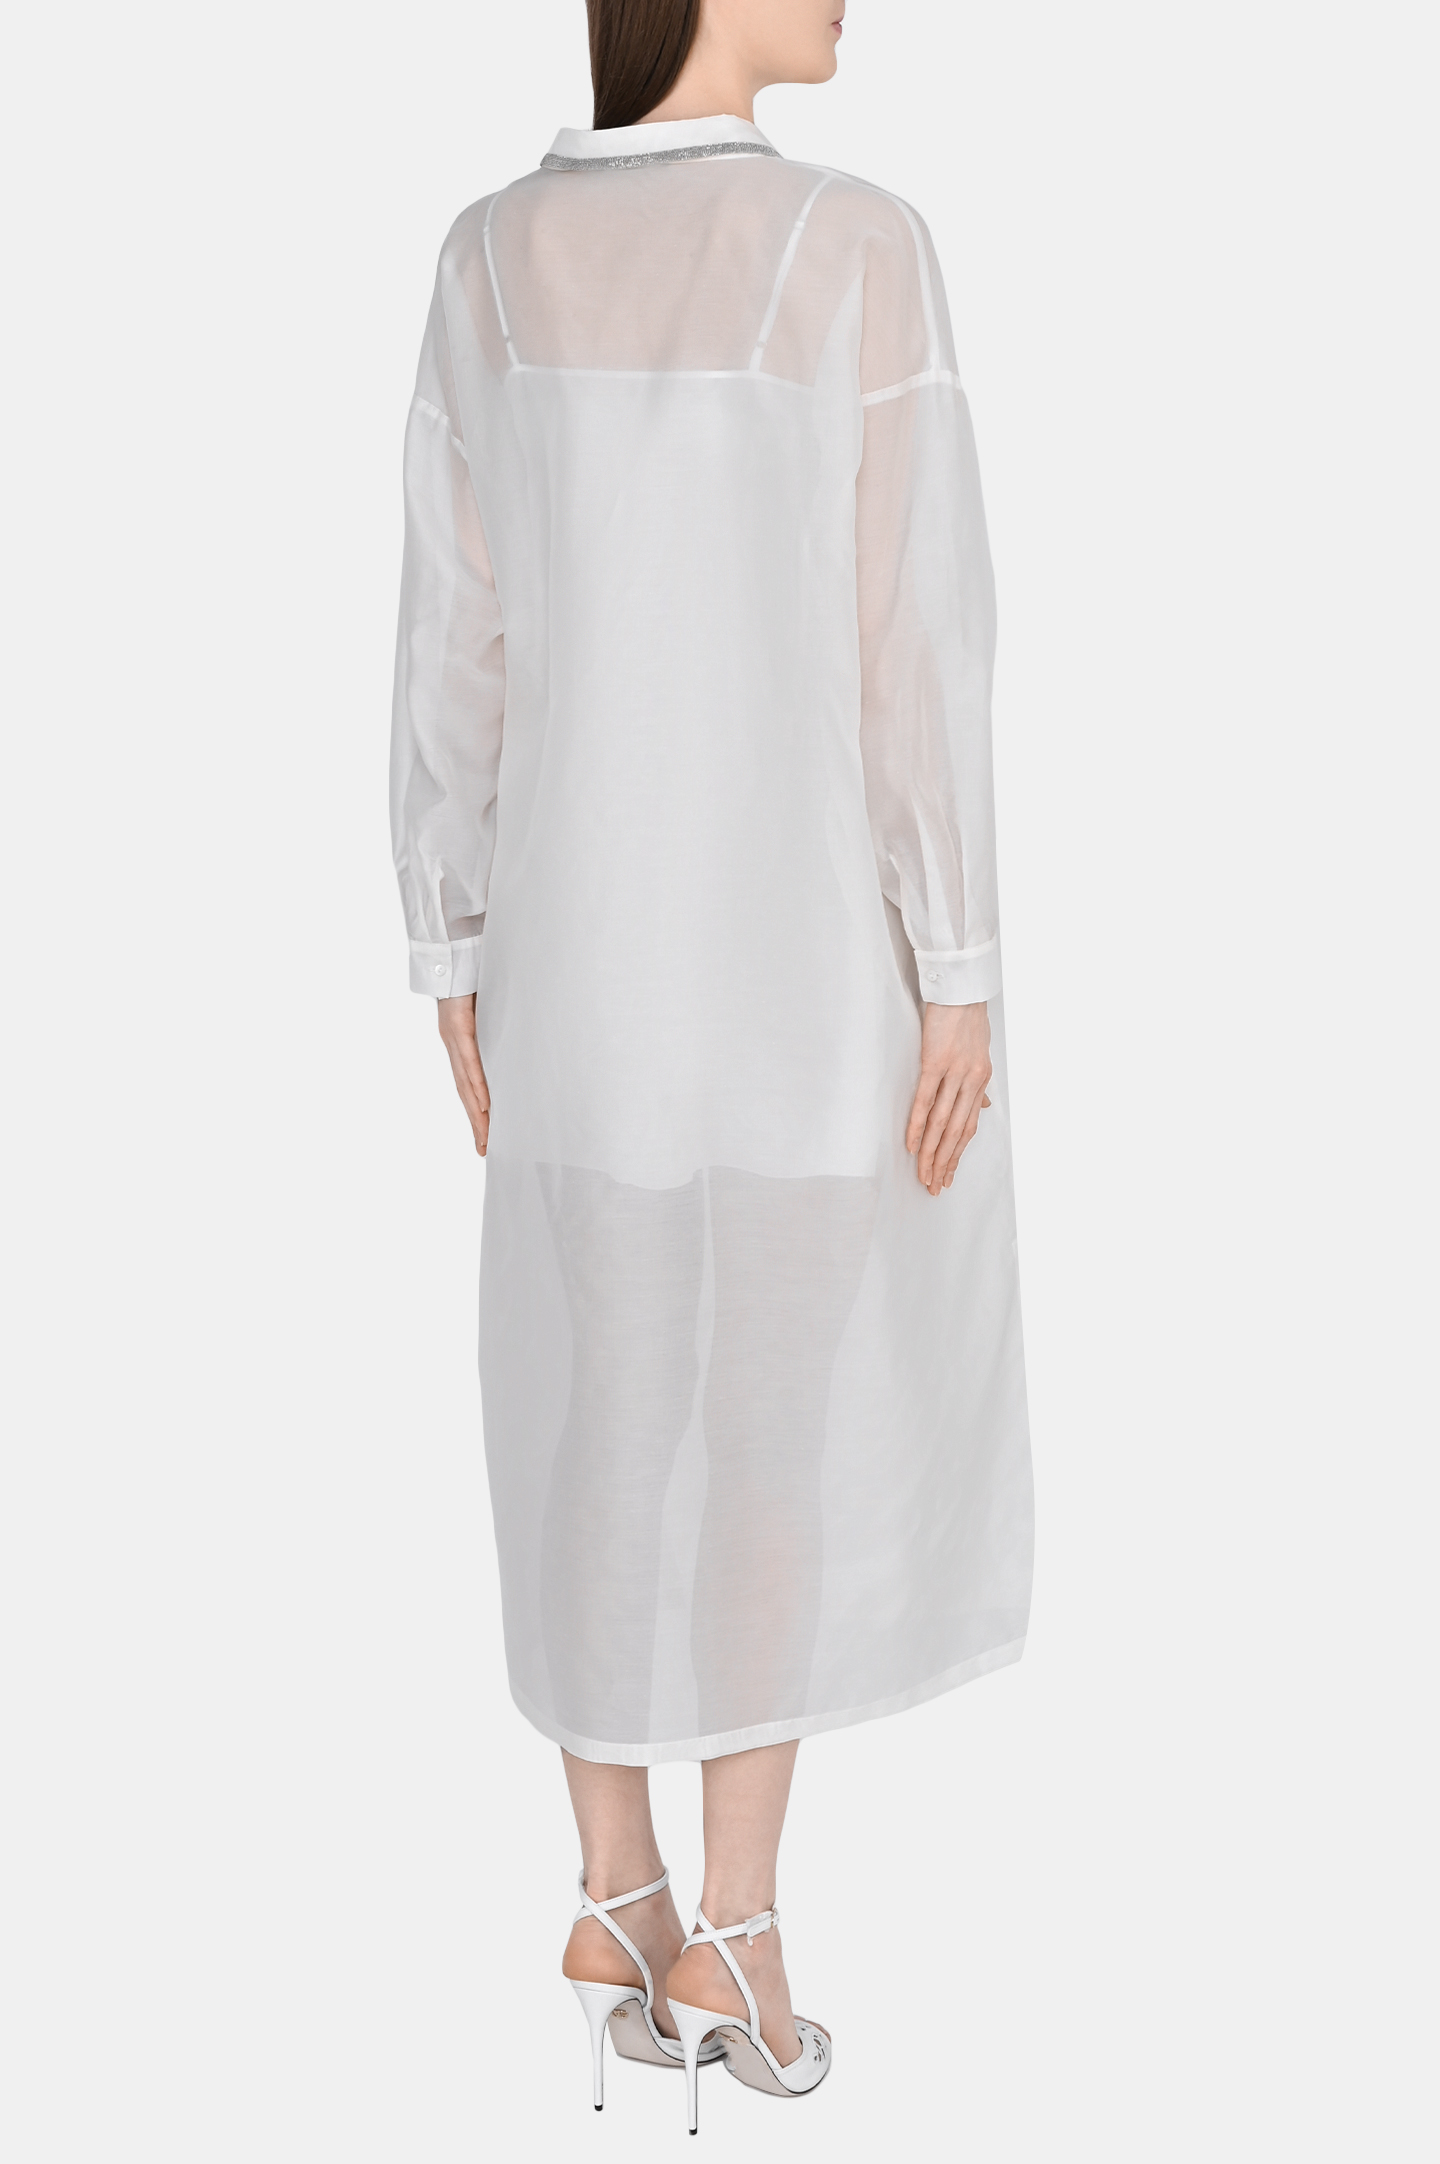 Платье FABIANA FILIPPI ABD273B579I810, цвет: Белый, Женский